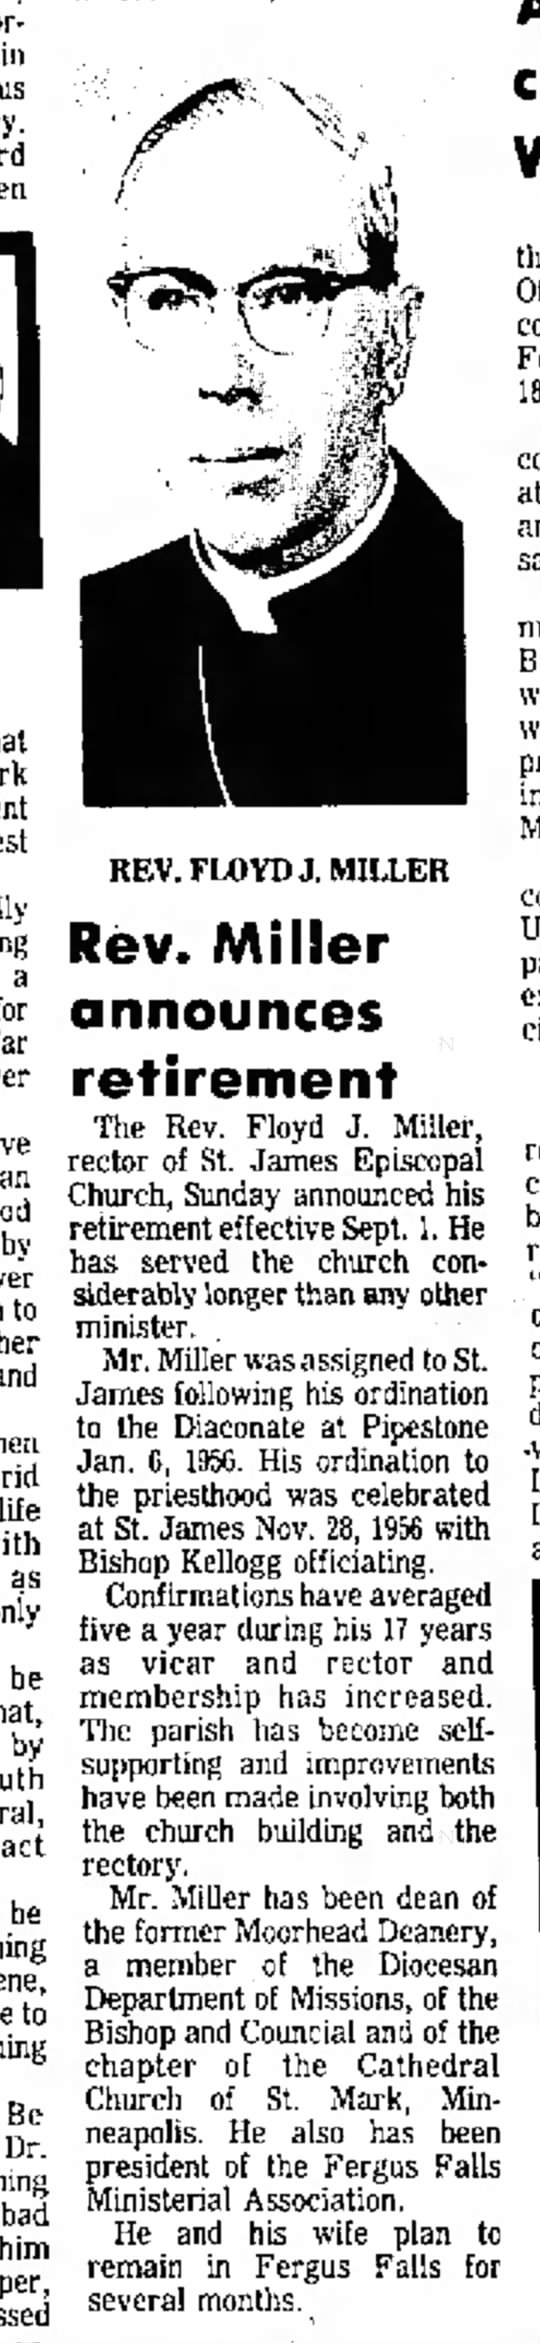 Rev. Floyd J Miller - Retirement